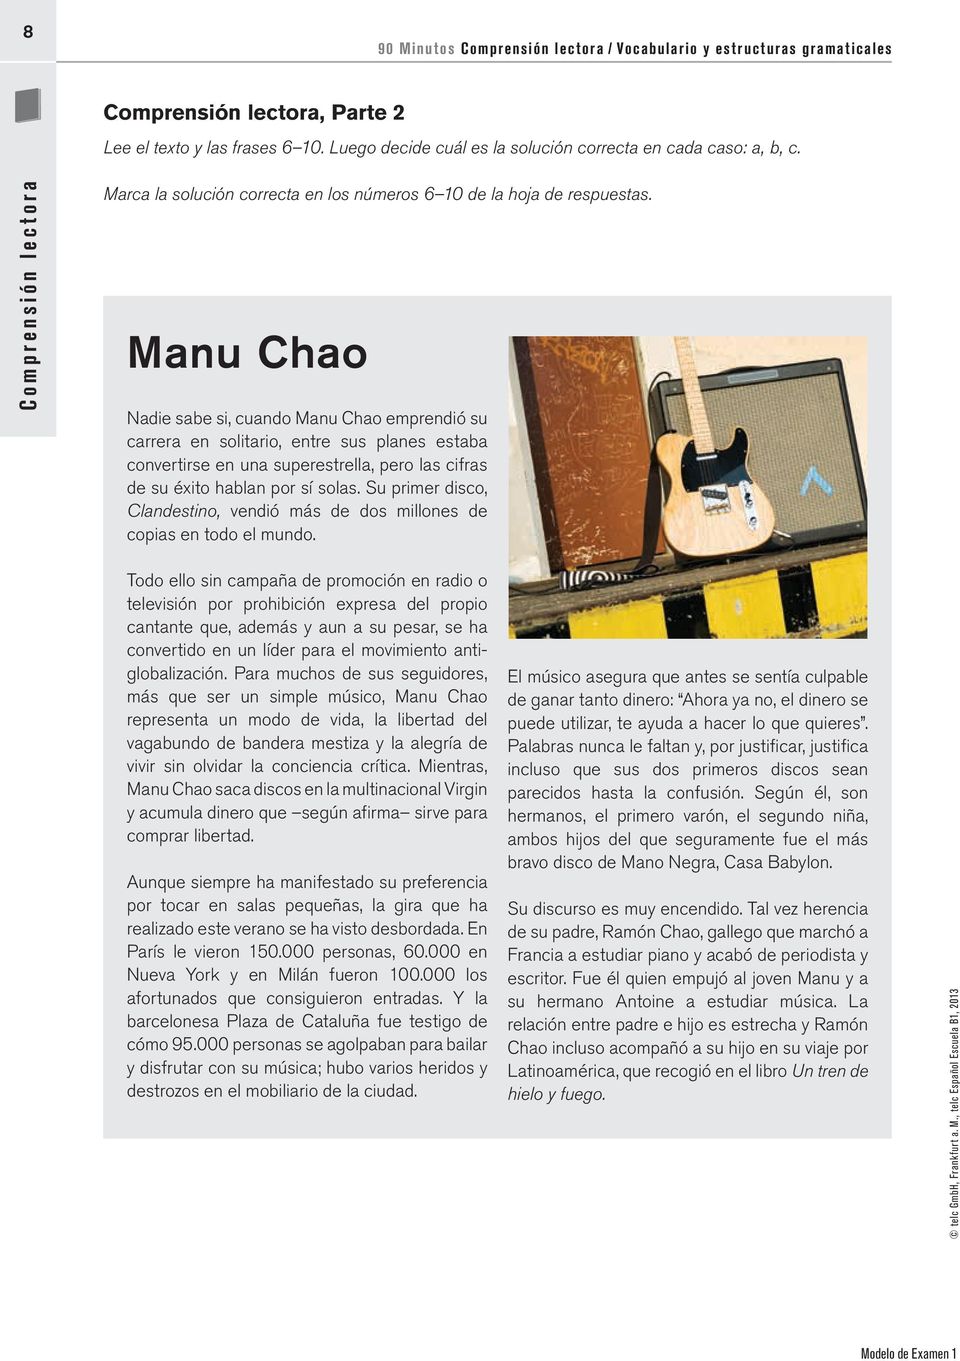 Manu Chao Nadie sabe si, cuando Manu Chao emprendió su carrera en solitario, entre sus planes estaba convertirse en una superestrella, pero las cifras de su éxito hablan por sí solas.